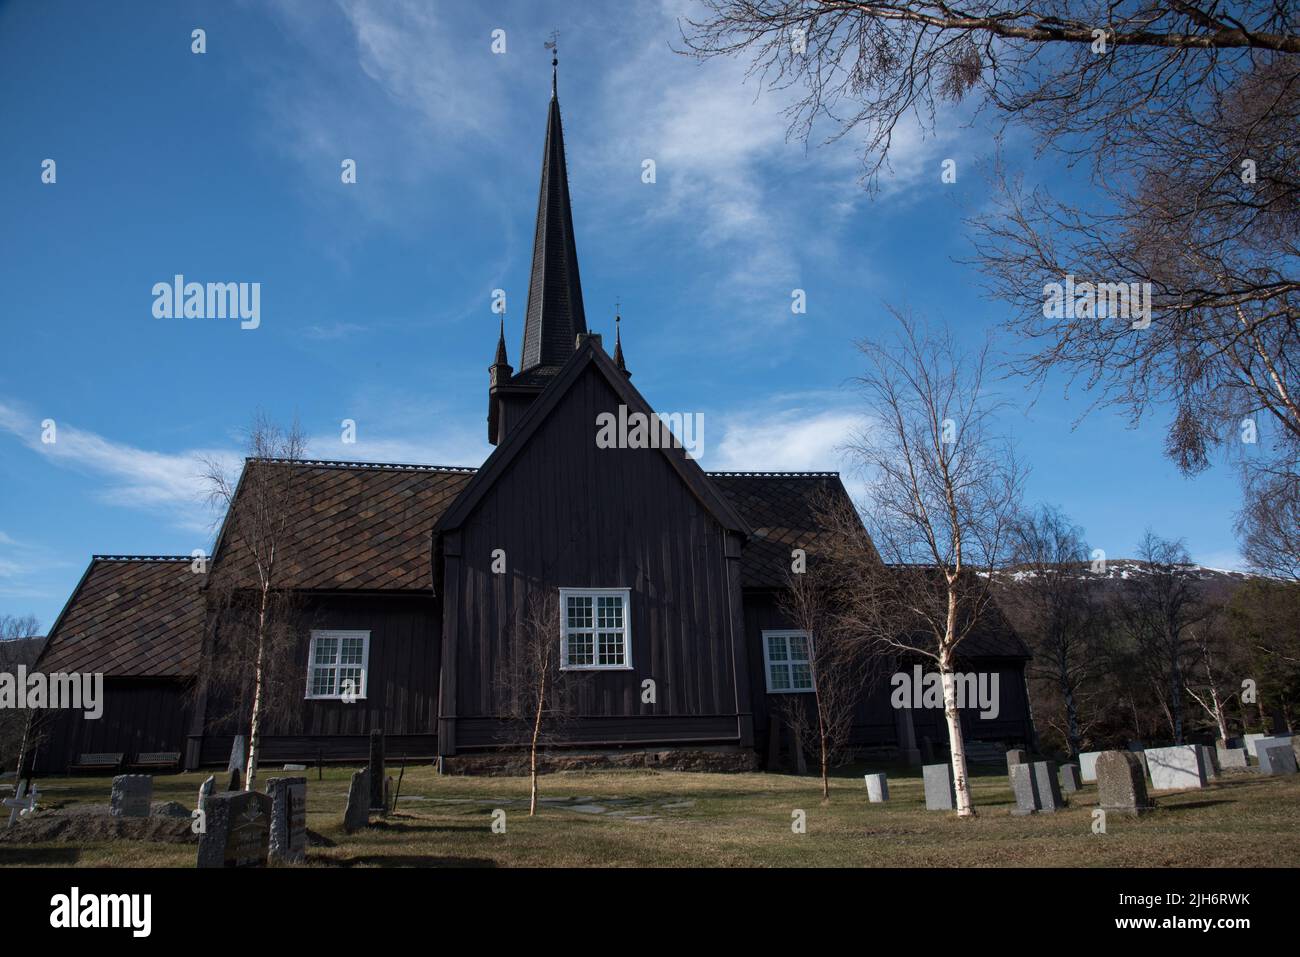 La iglesia de Lesja fue construida en 1749 con diseño cruciforme en Gudbrandsdalen, Noruega, en el condado de Innlandet. Foto de stock